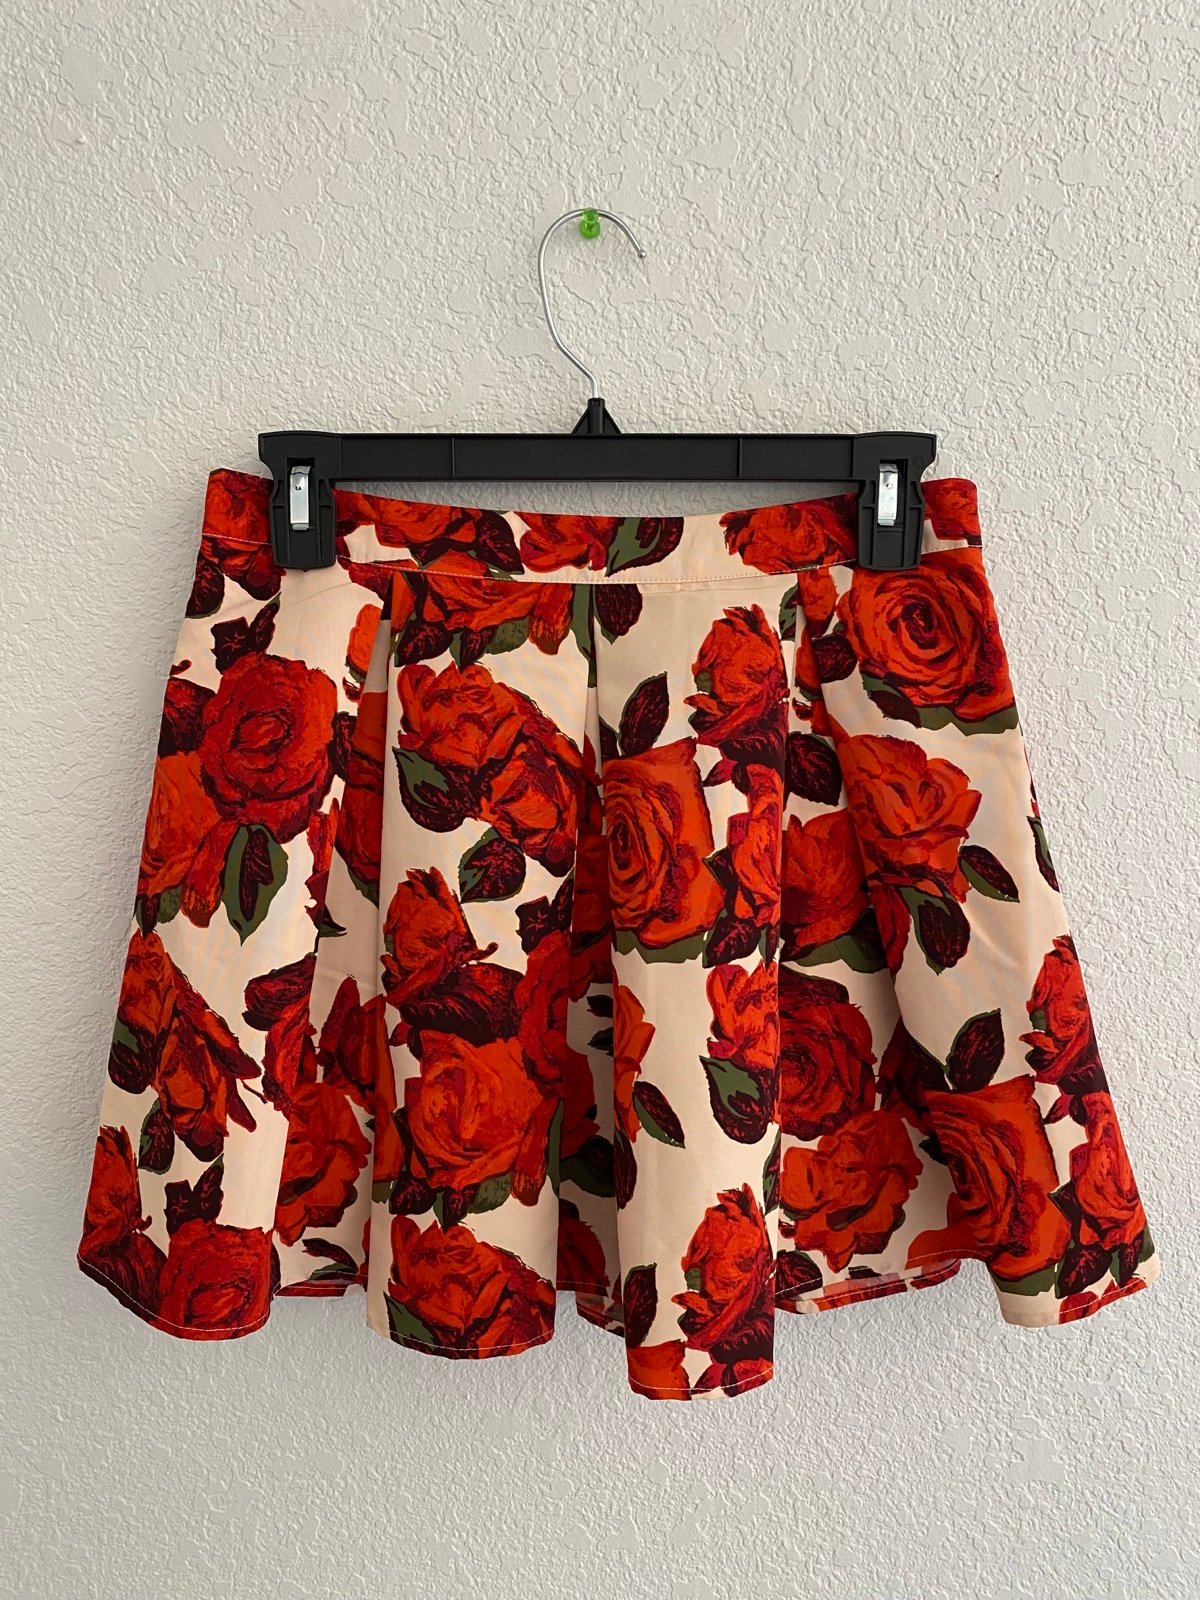 Gorgeous Forever 21 Red Floral Skirt jJG3uAOe3 on sale